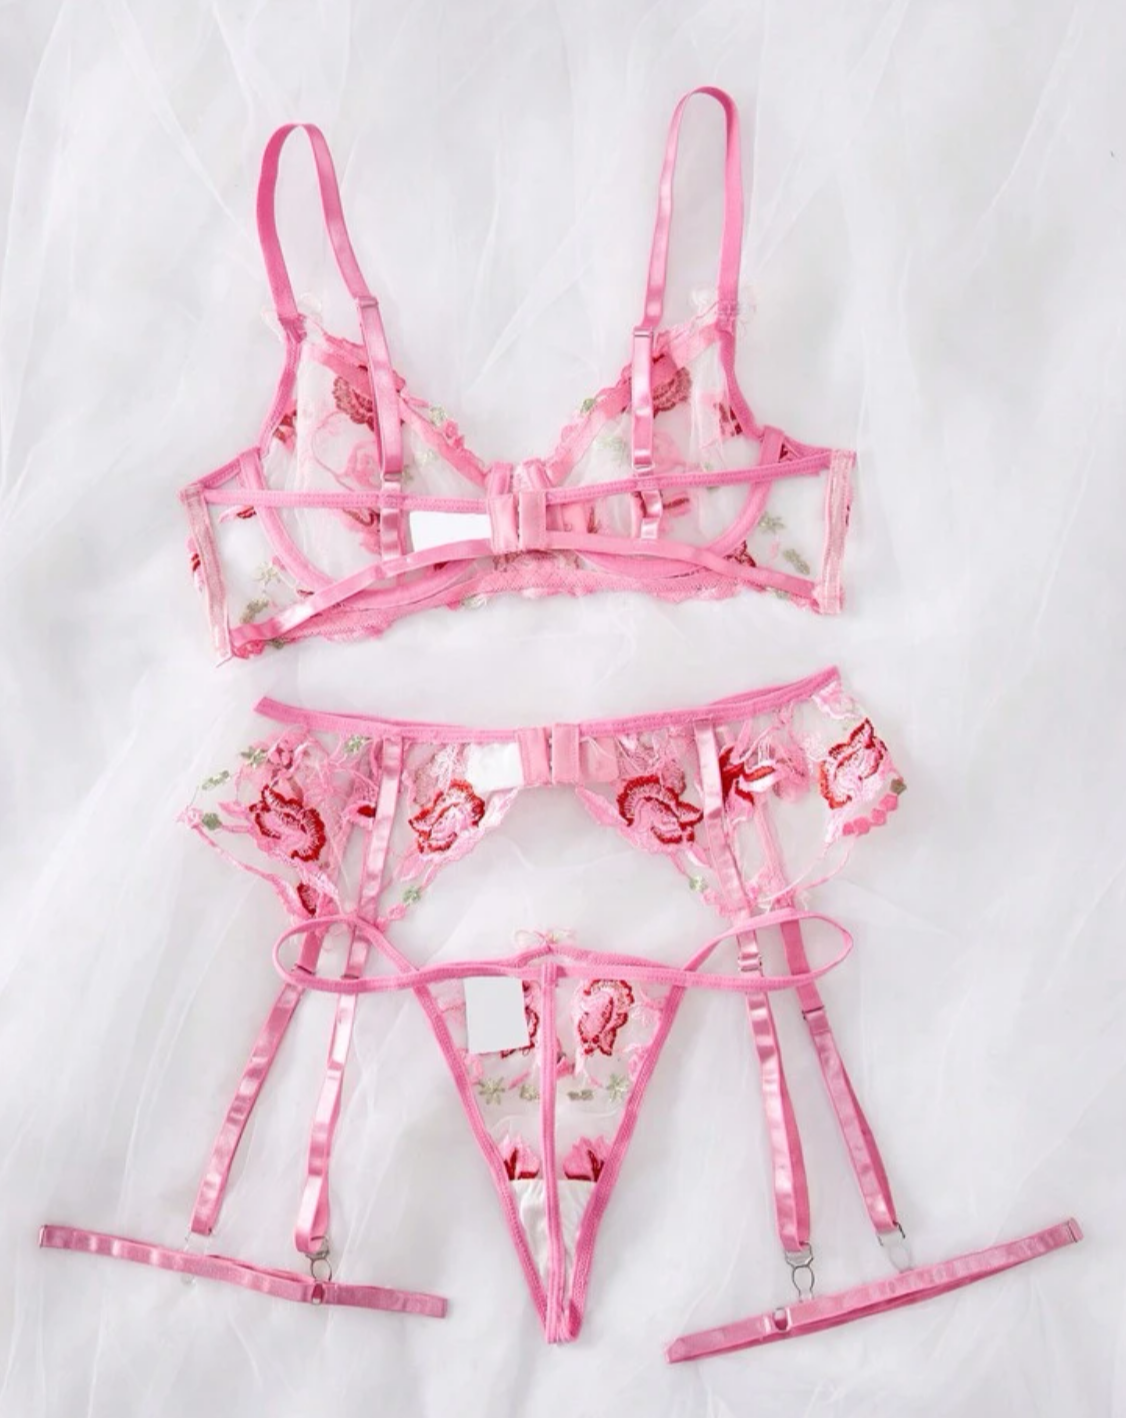 pink lingerie set with garter